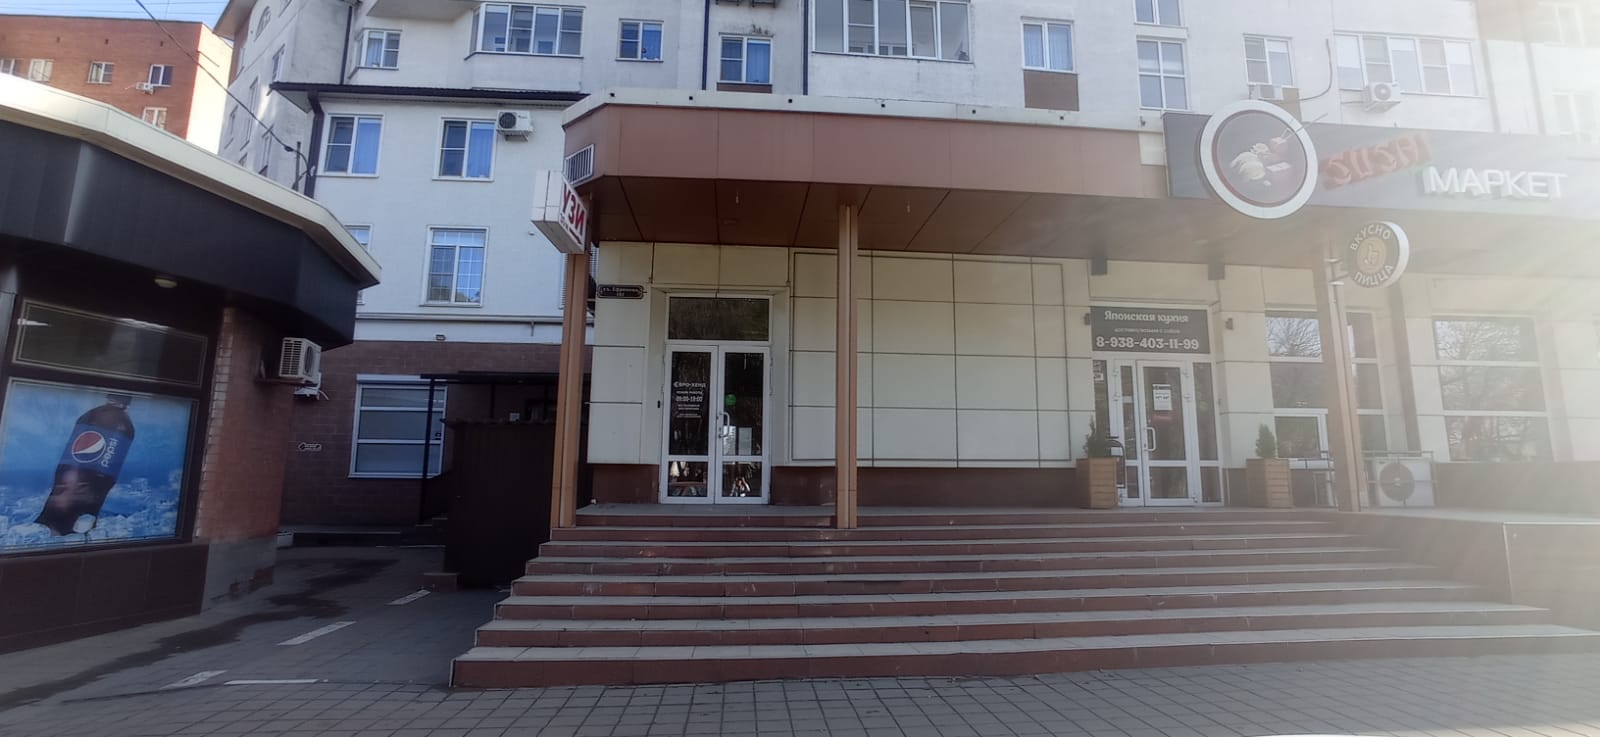 Предлагаем к аренде офисное помещение площадью 30 м², на 1ом этаже по ул. Ефремова д.101, напрямую от собственника._1